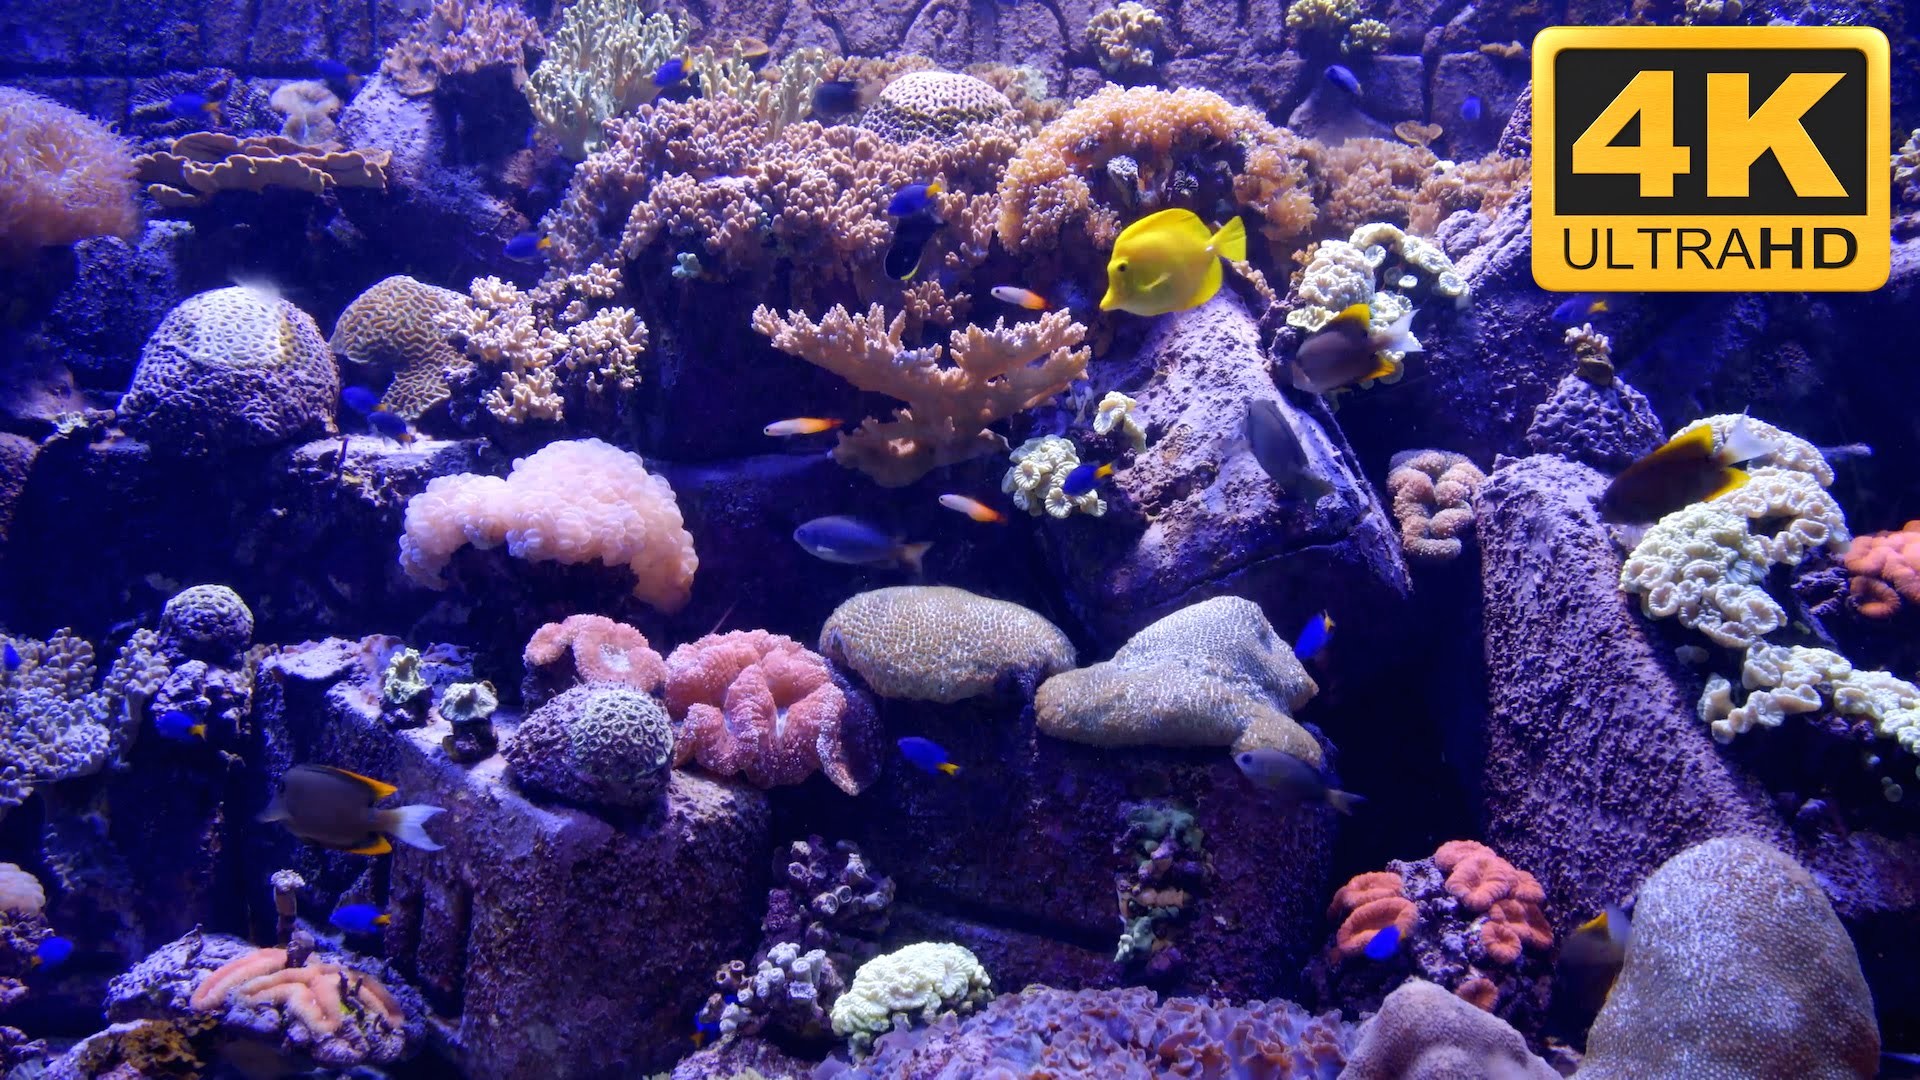 sachs marine aquarium screensaver v2.0